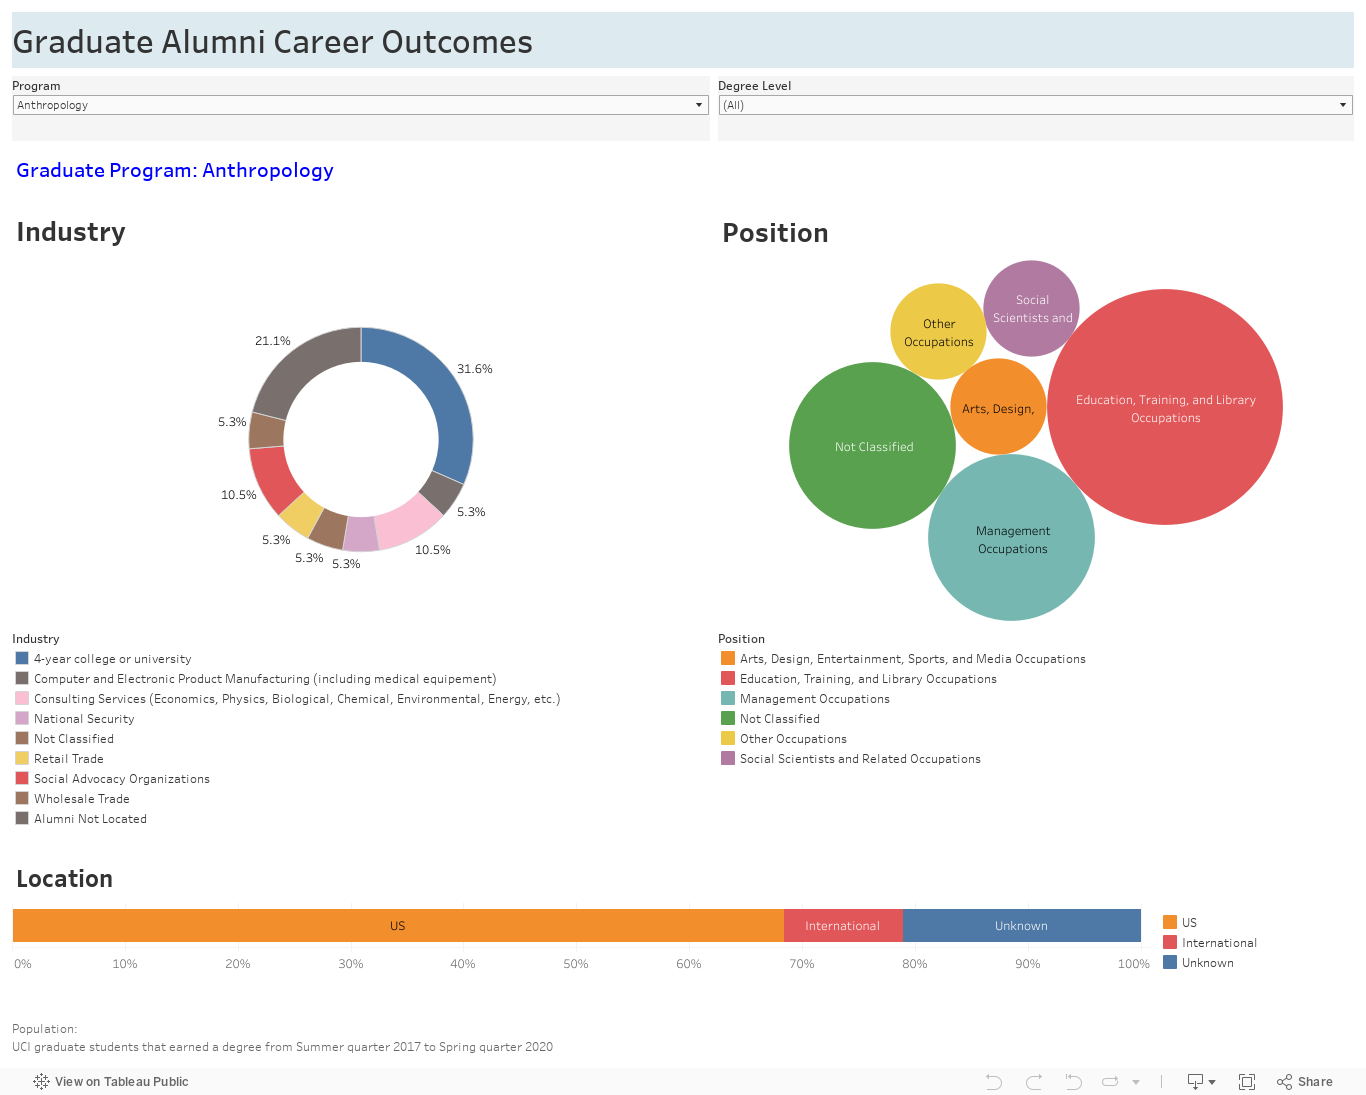 Graduate Alumni Career Outcomes 